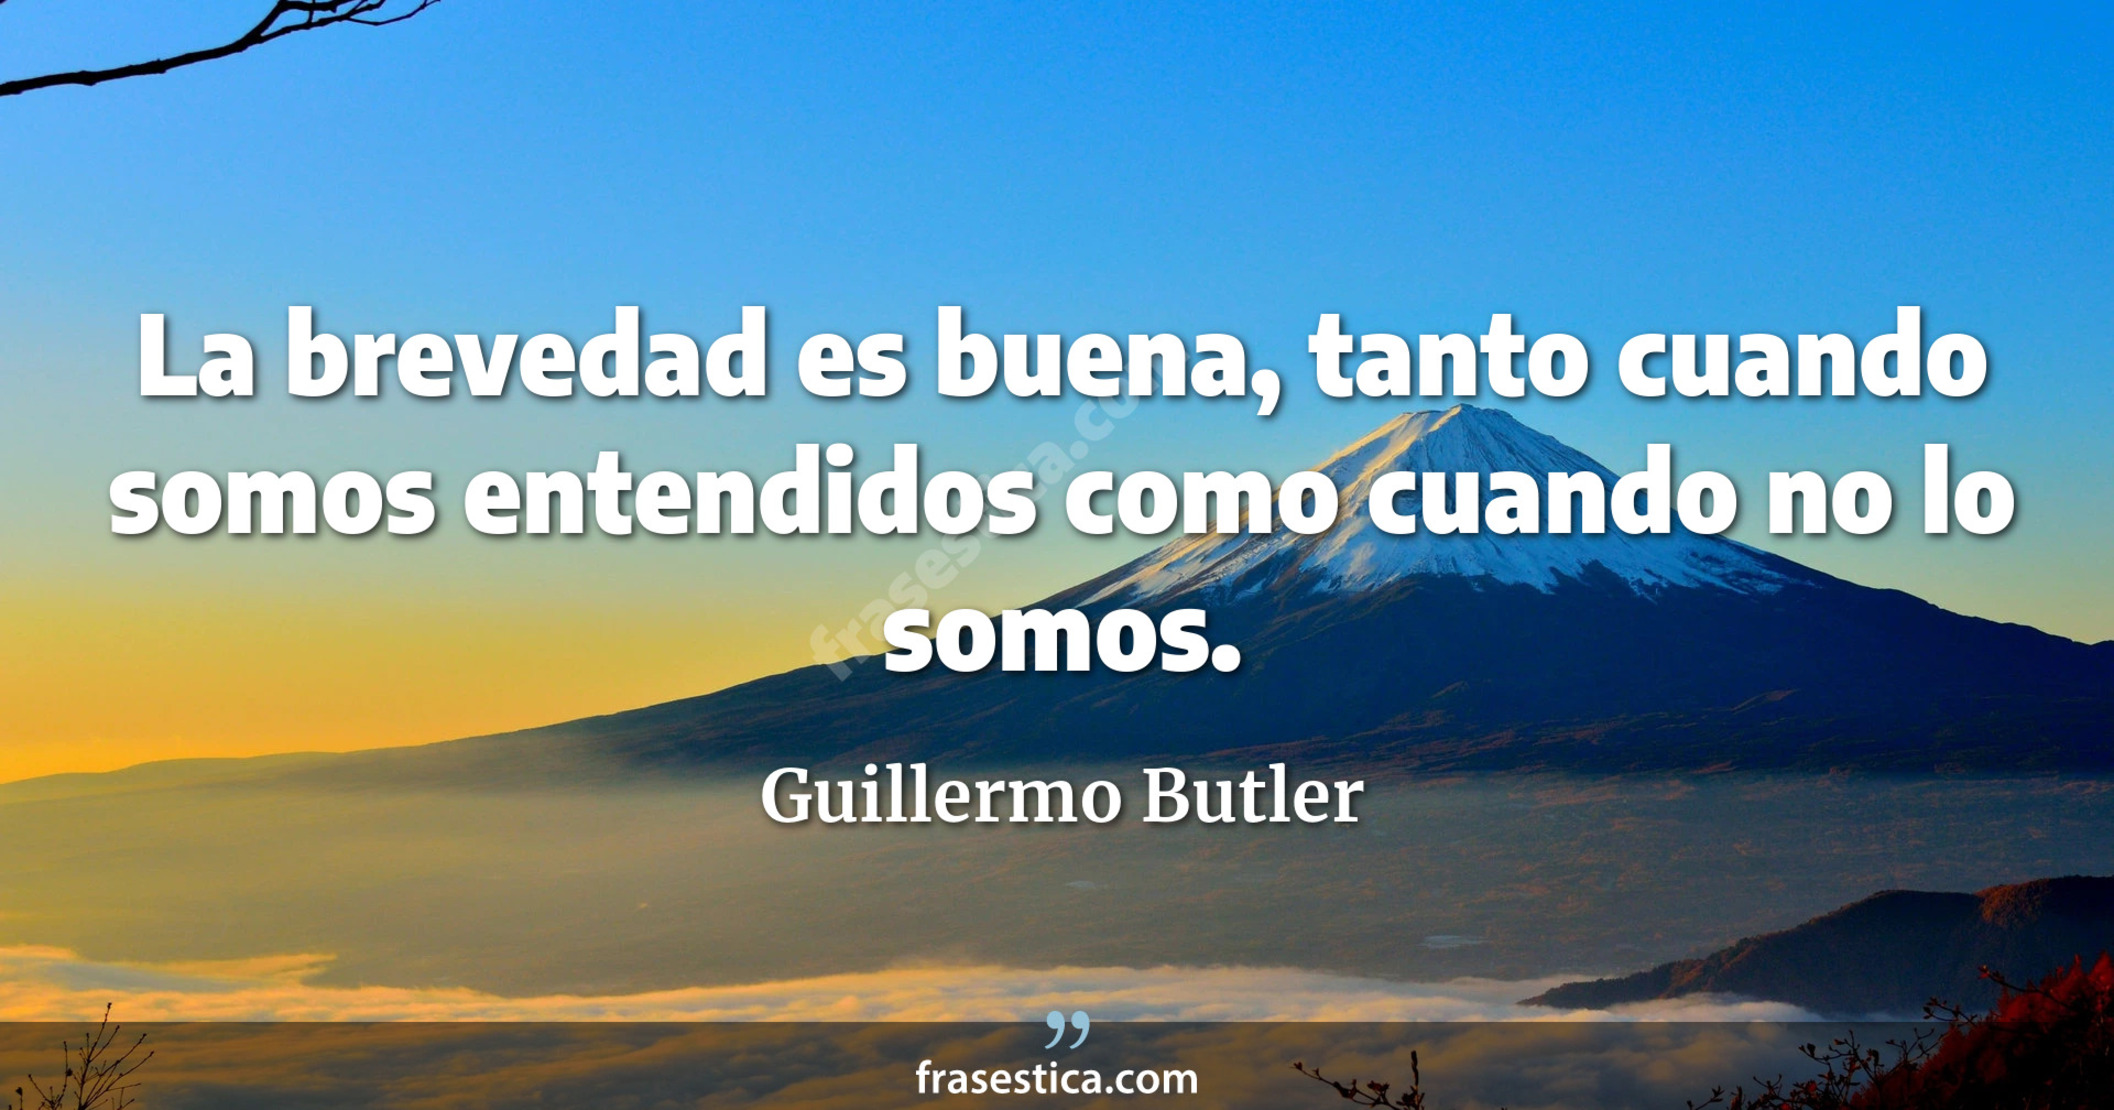 La brevedad es buena, tanto cuando somos entendidos como cuando no lo somos. - Guillermo Butler